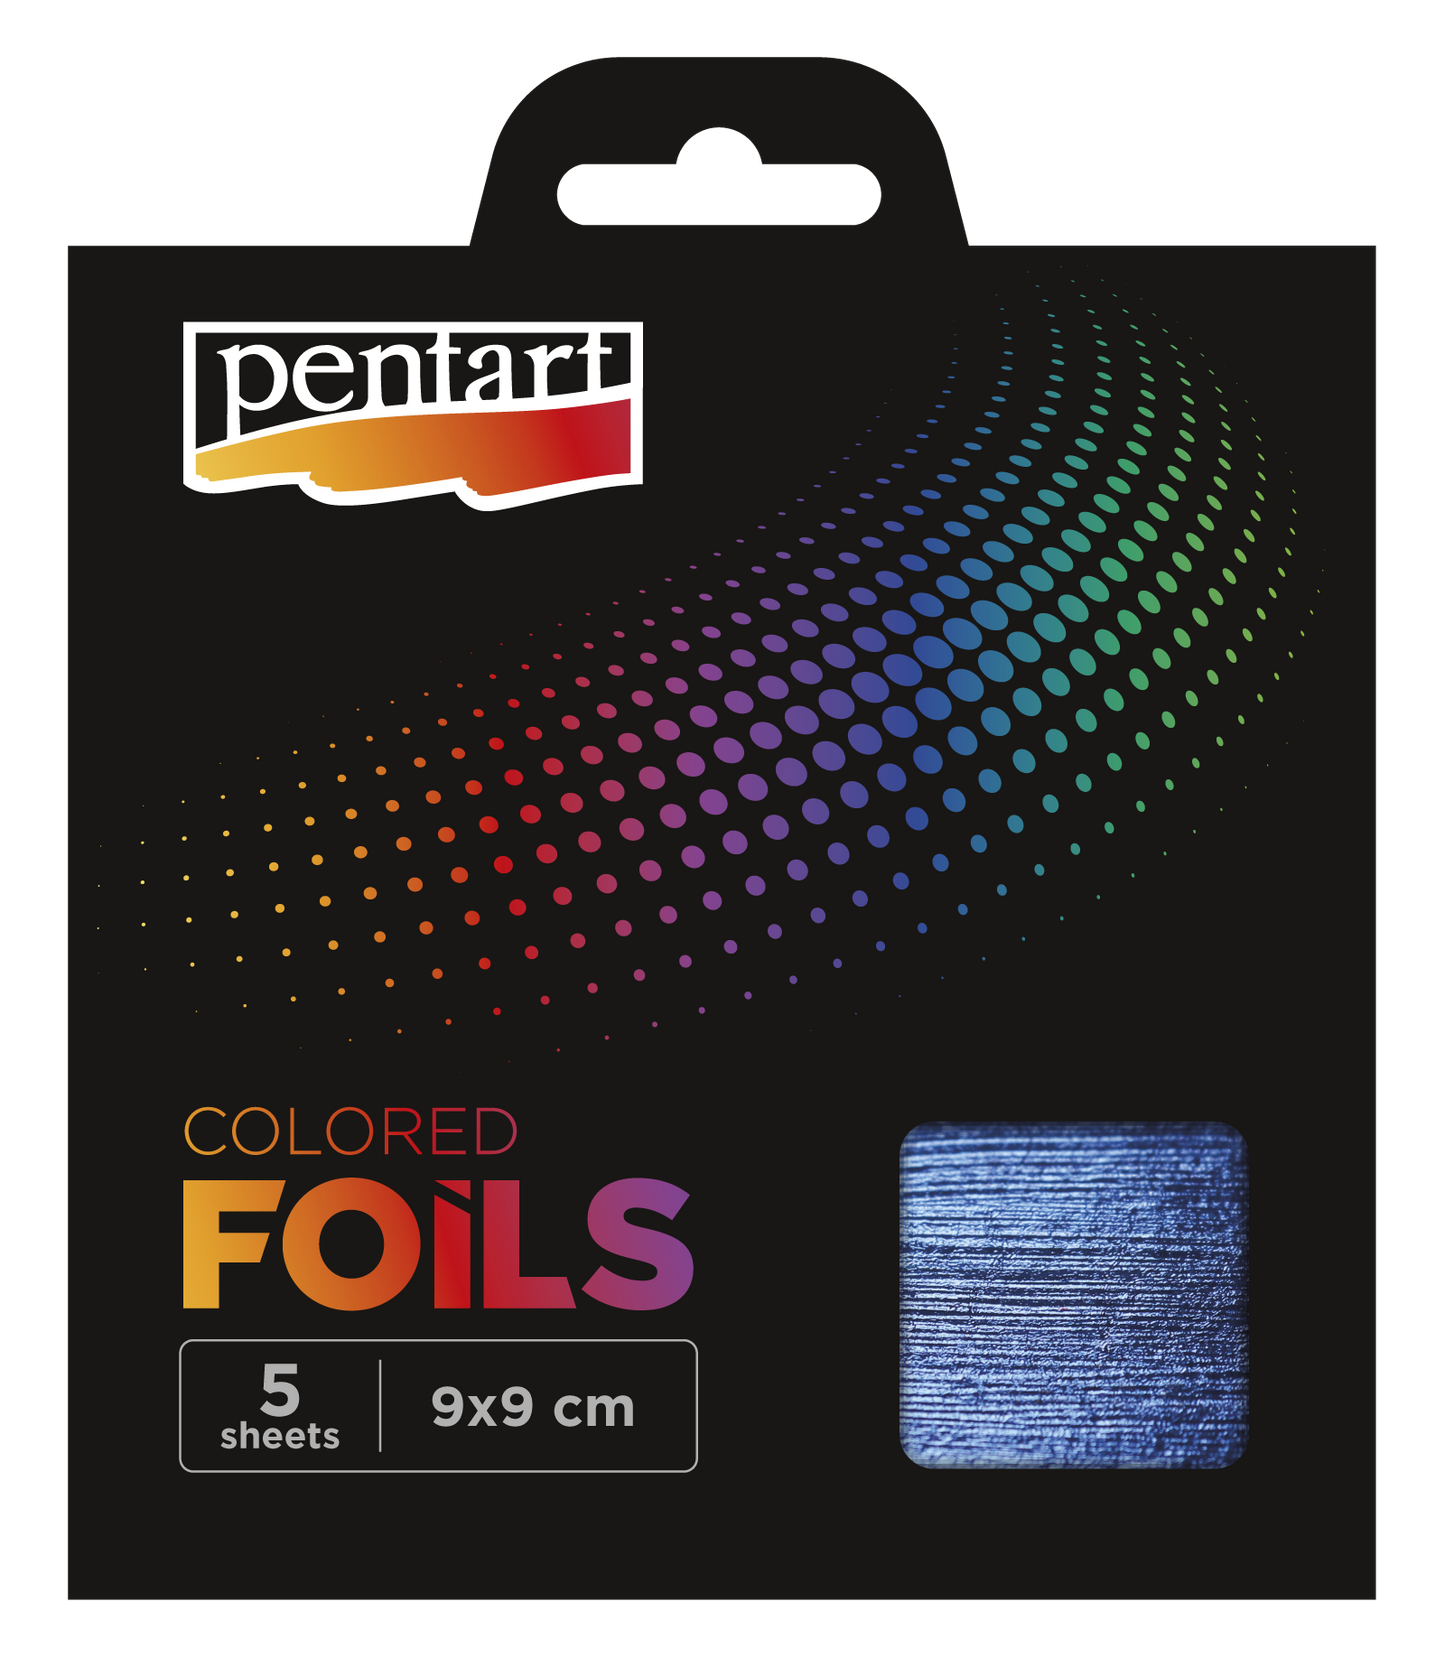 Pentart Colored Foil Sheets 9x9 cm 5 Sheets/pack, Dark Blue